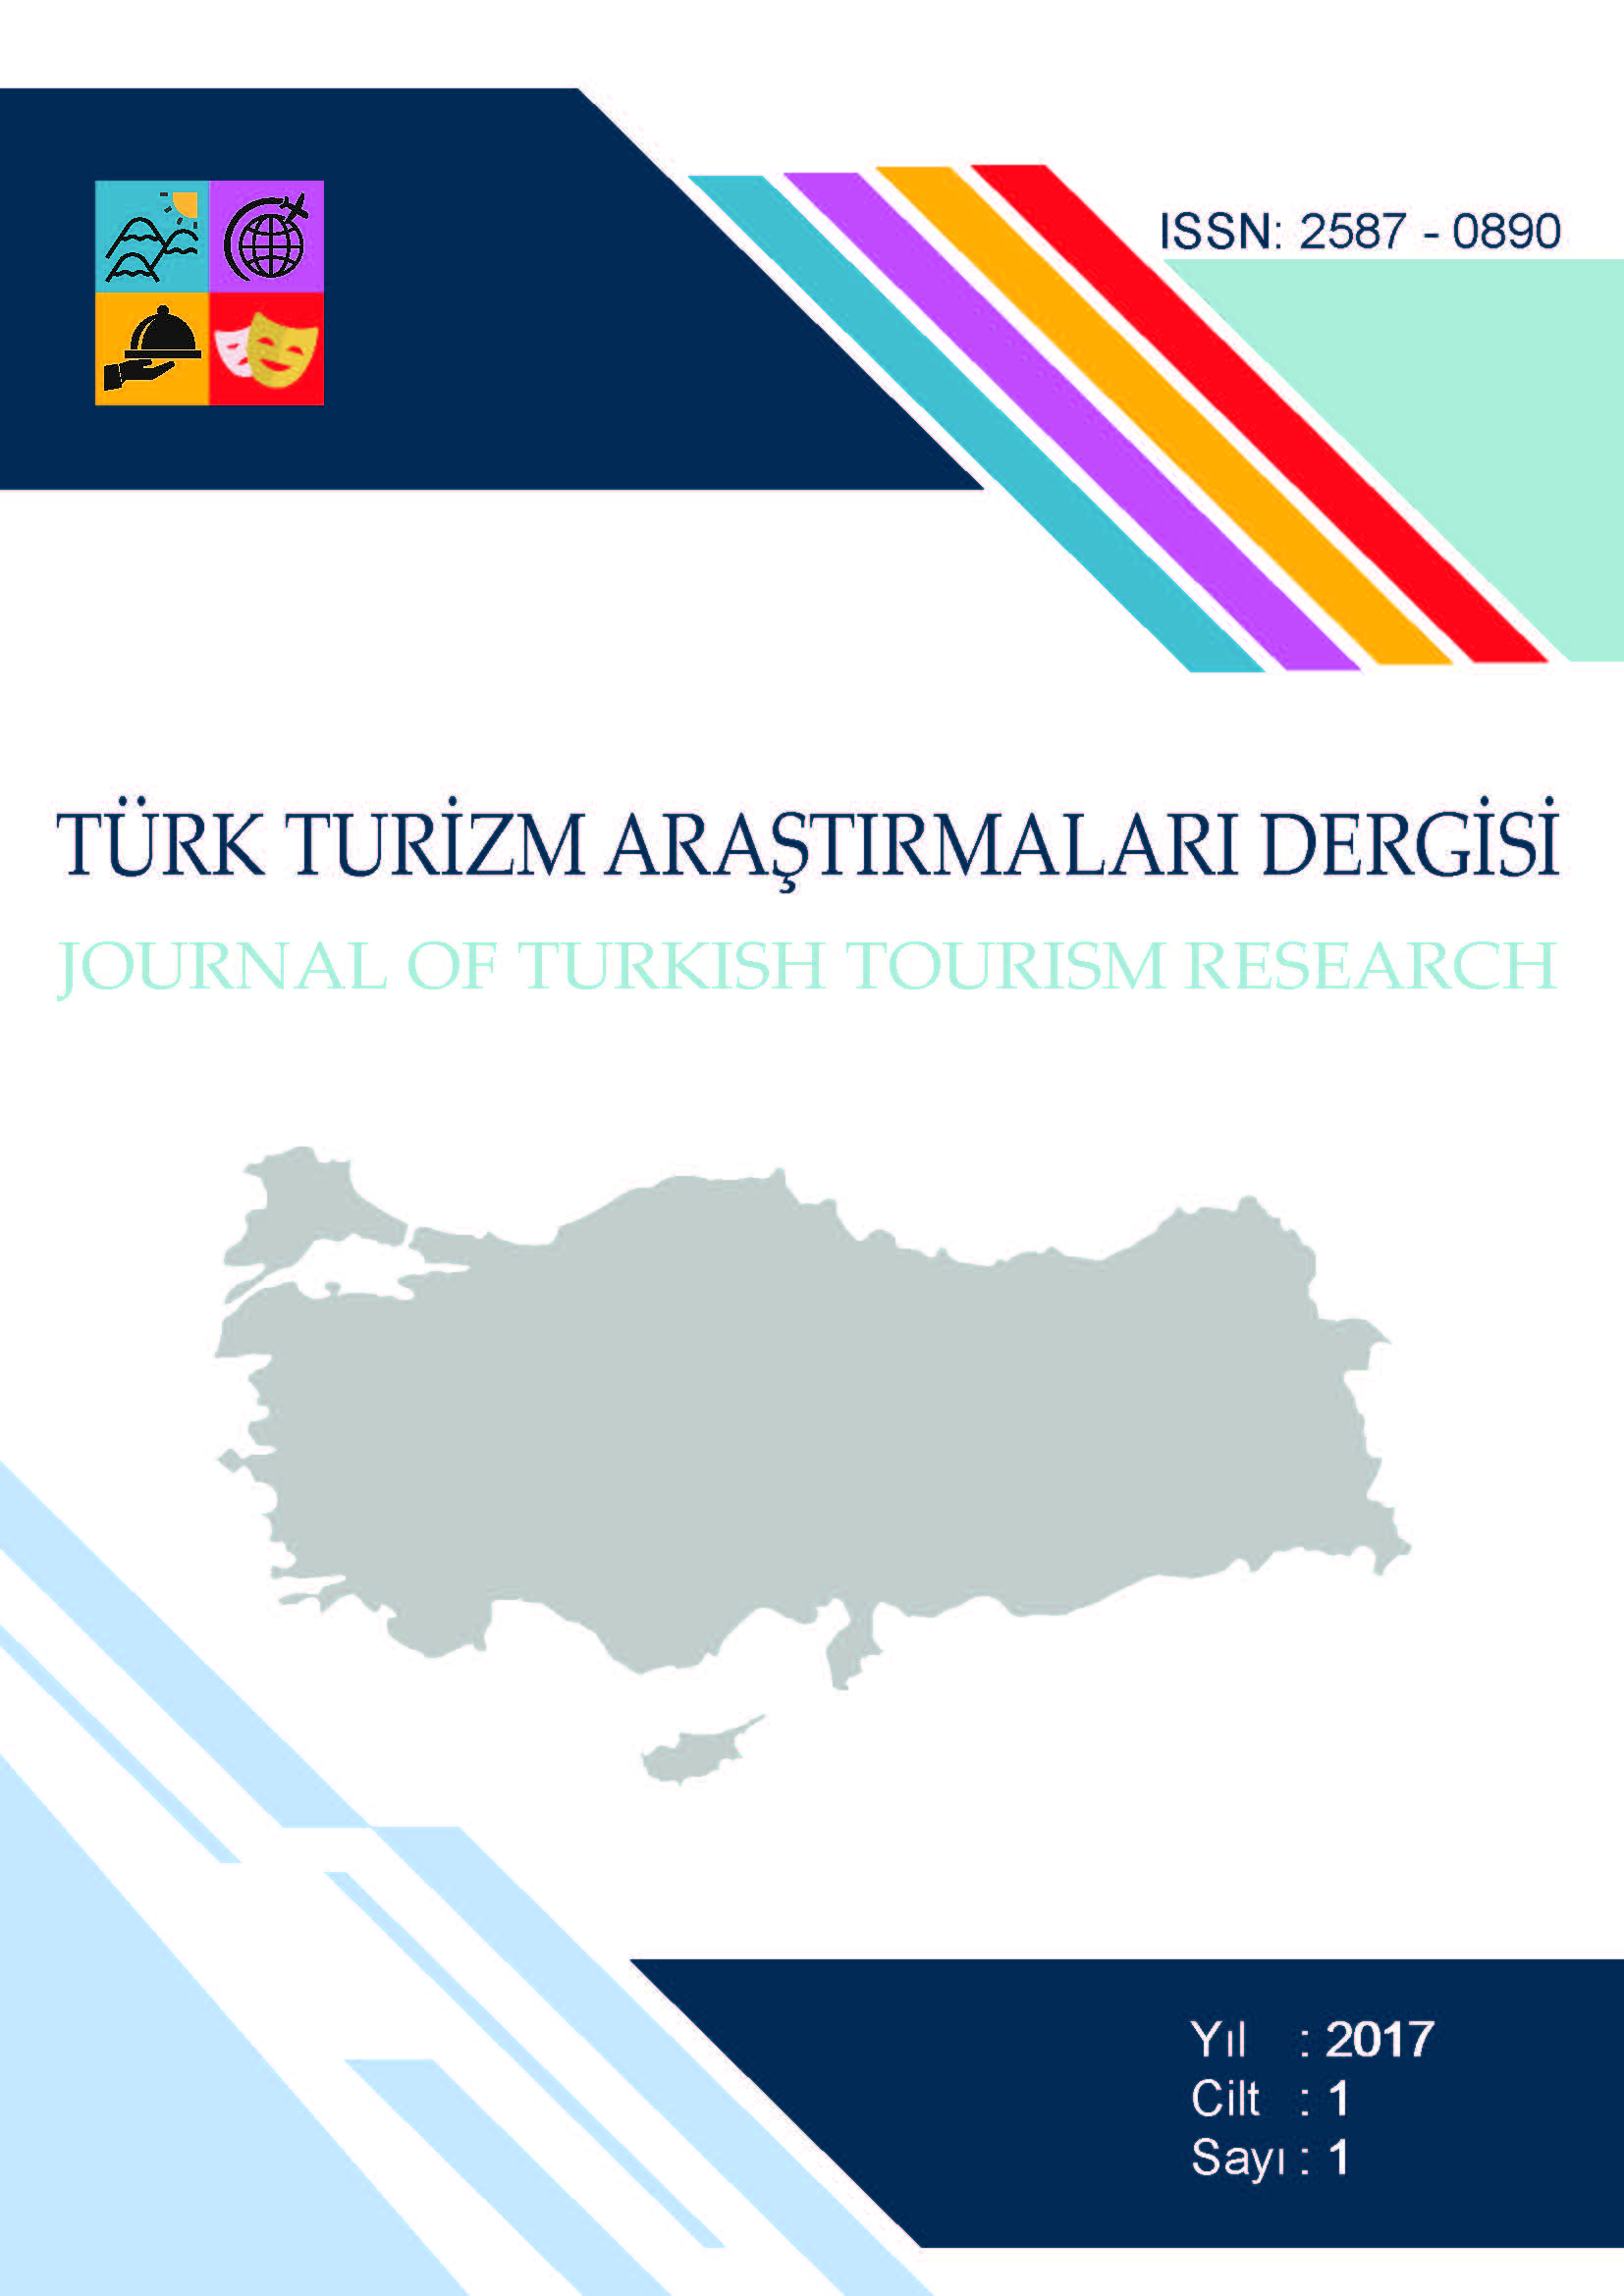 Rize İlinin Turizm Göstergelerinin Yıllara Göre Türkiye ile Kıyaslanması: 2009-2015